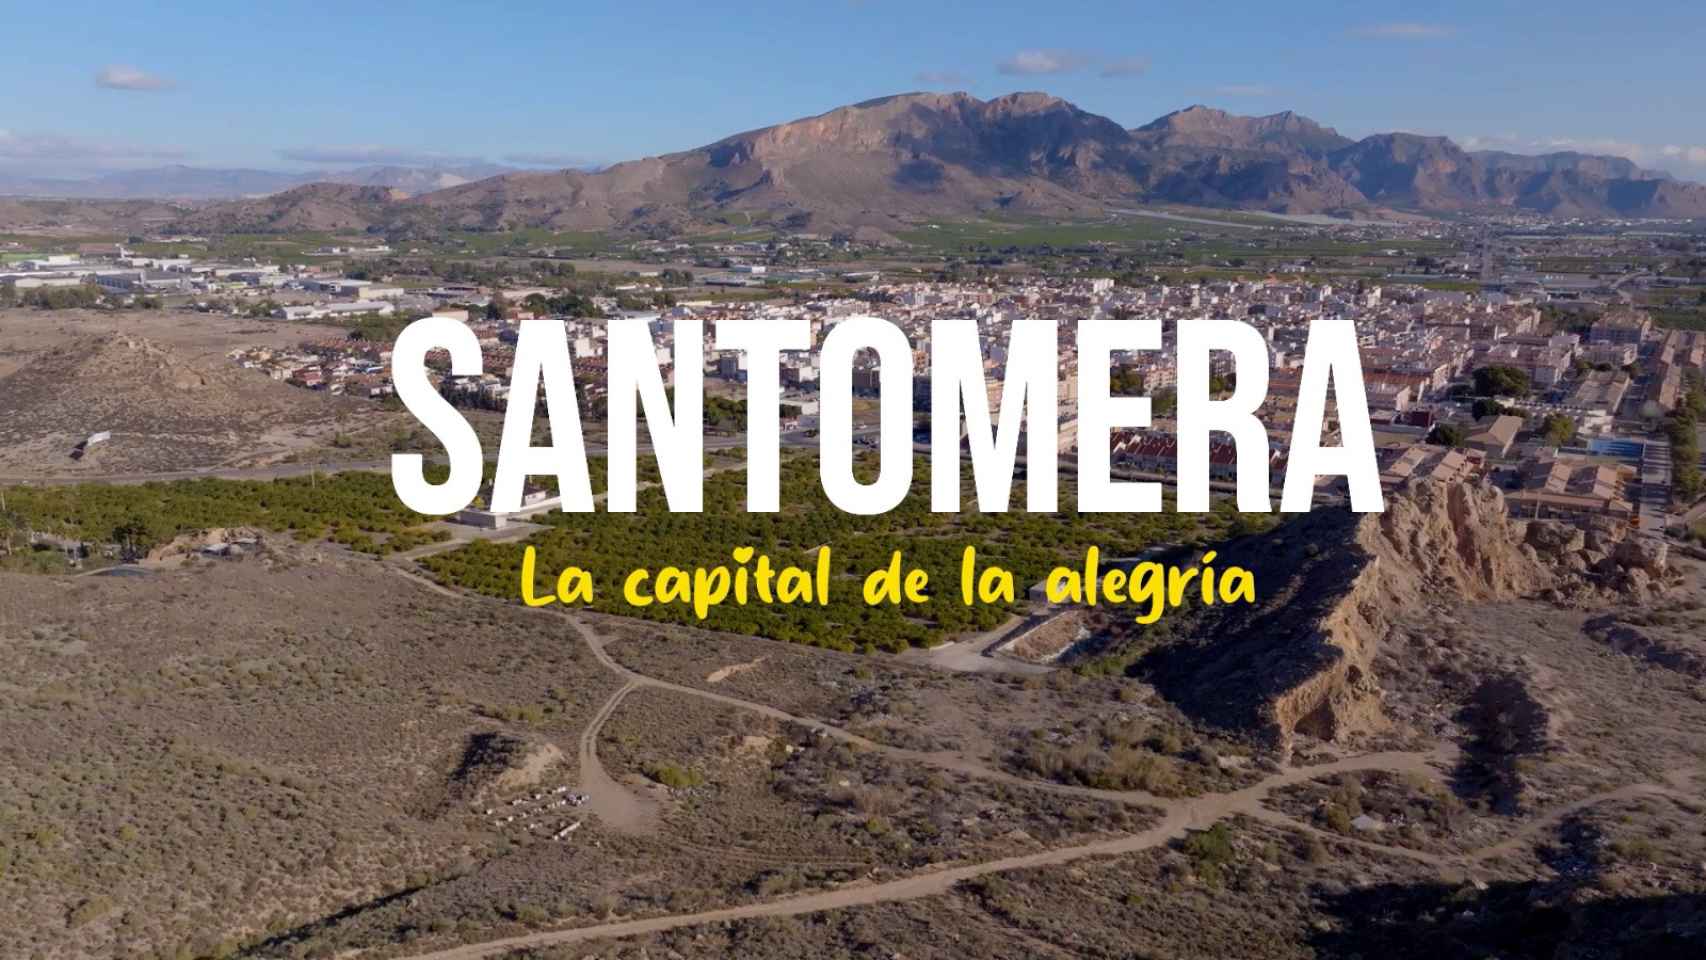 Una imagen del eslogan turístico de Santomera.